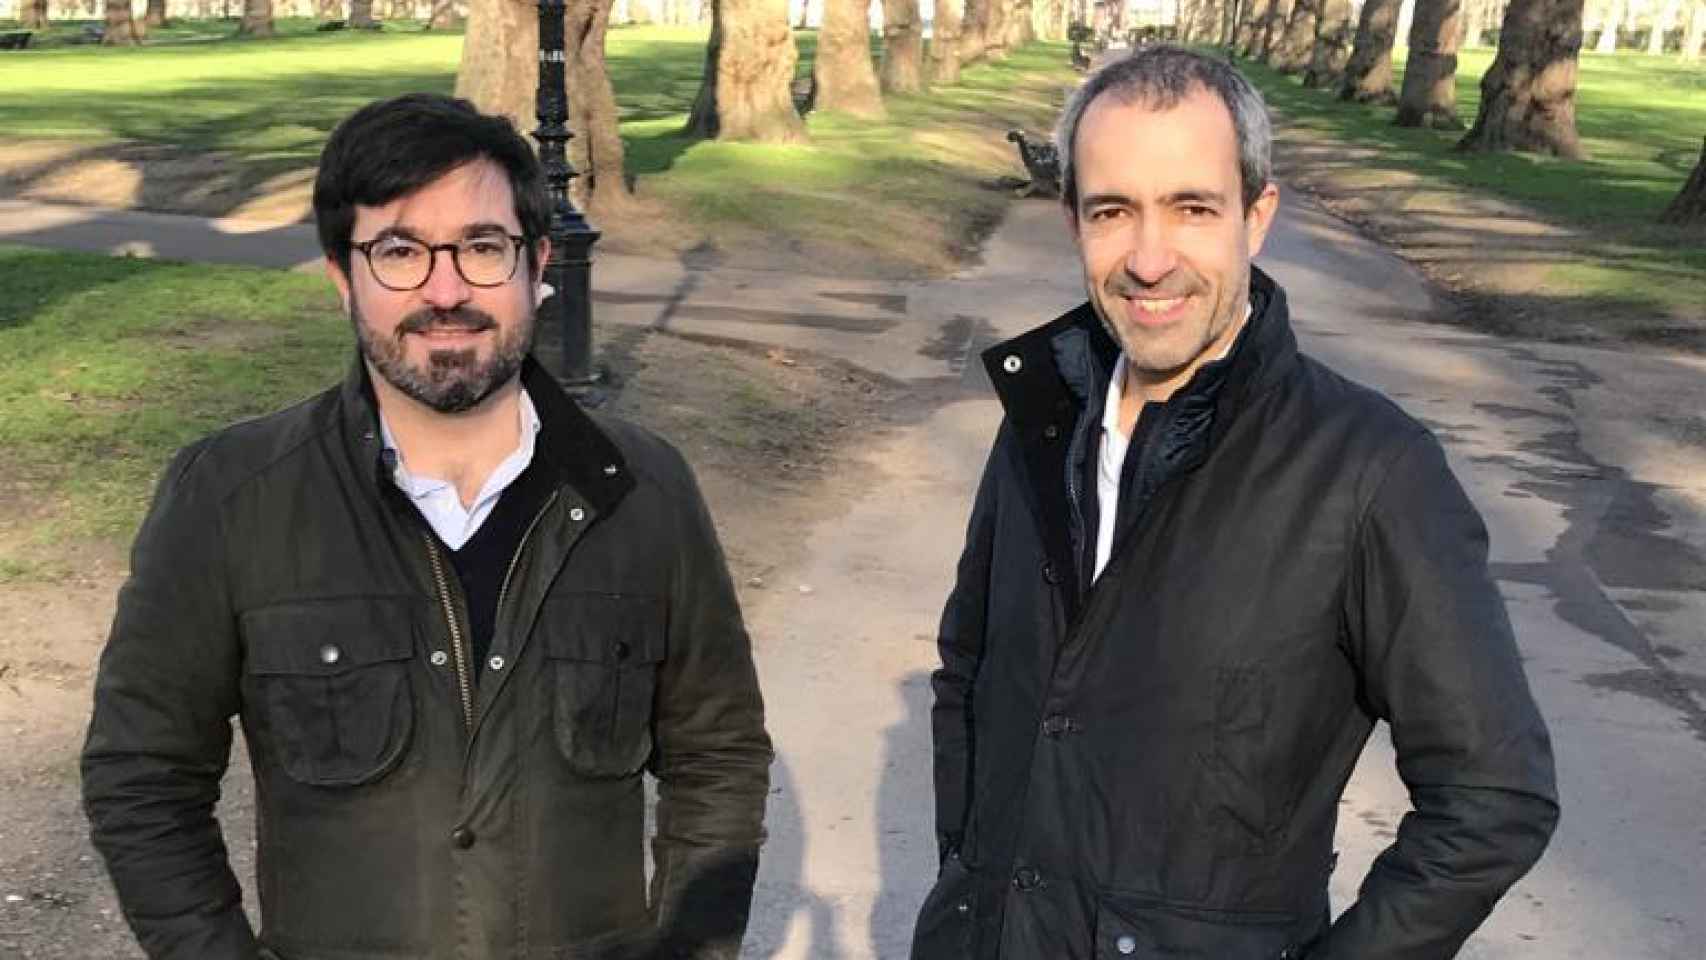 Tony Timoner (izquierda) y Luis Quiroga, fundadores de Oikos, en Green Park, Londres.